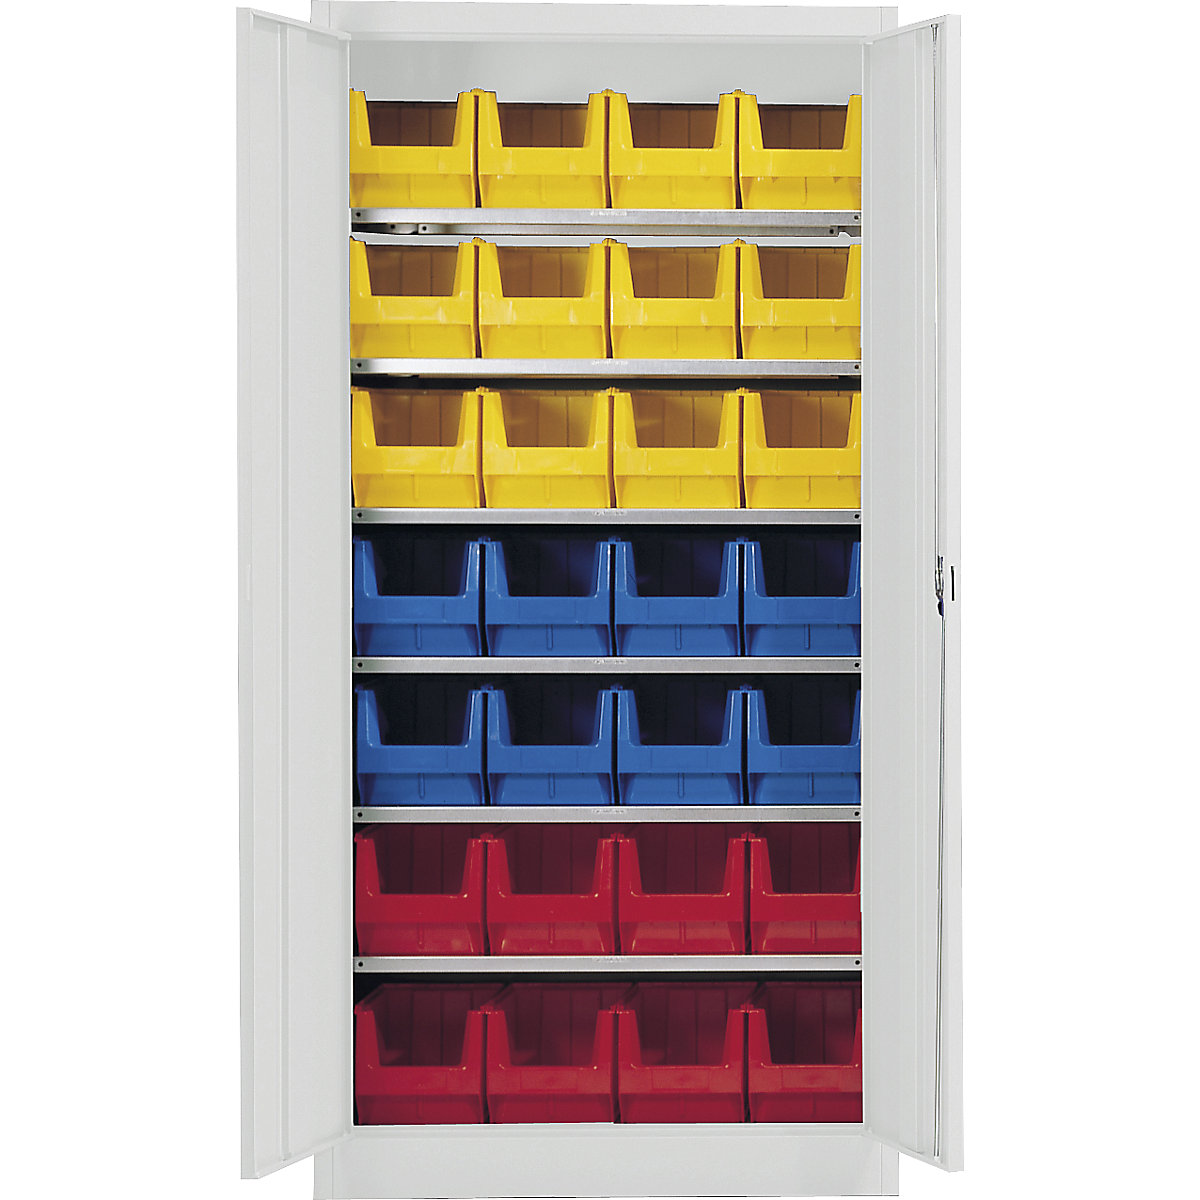 Skladišni ormar, u jednoj boji – mauser, s 28 otvorenih skladišnih kutija, 6 polica, u sivoj boji, od 3 kom.-4